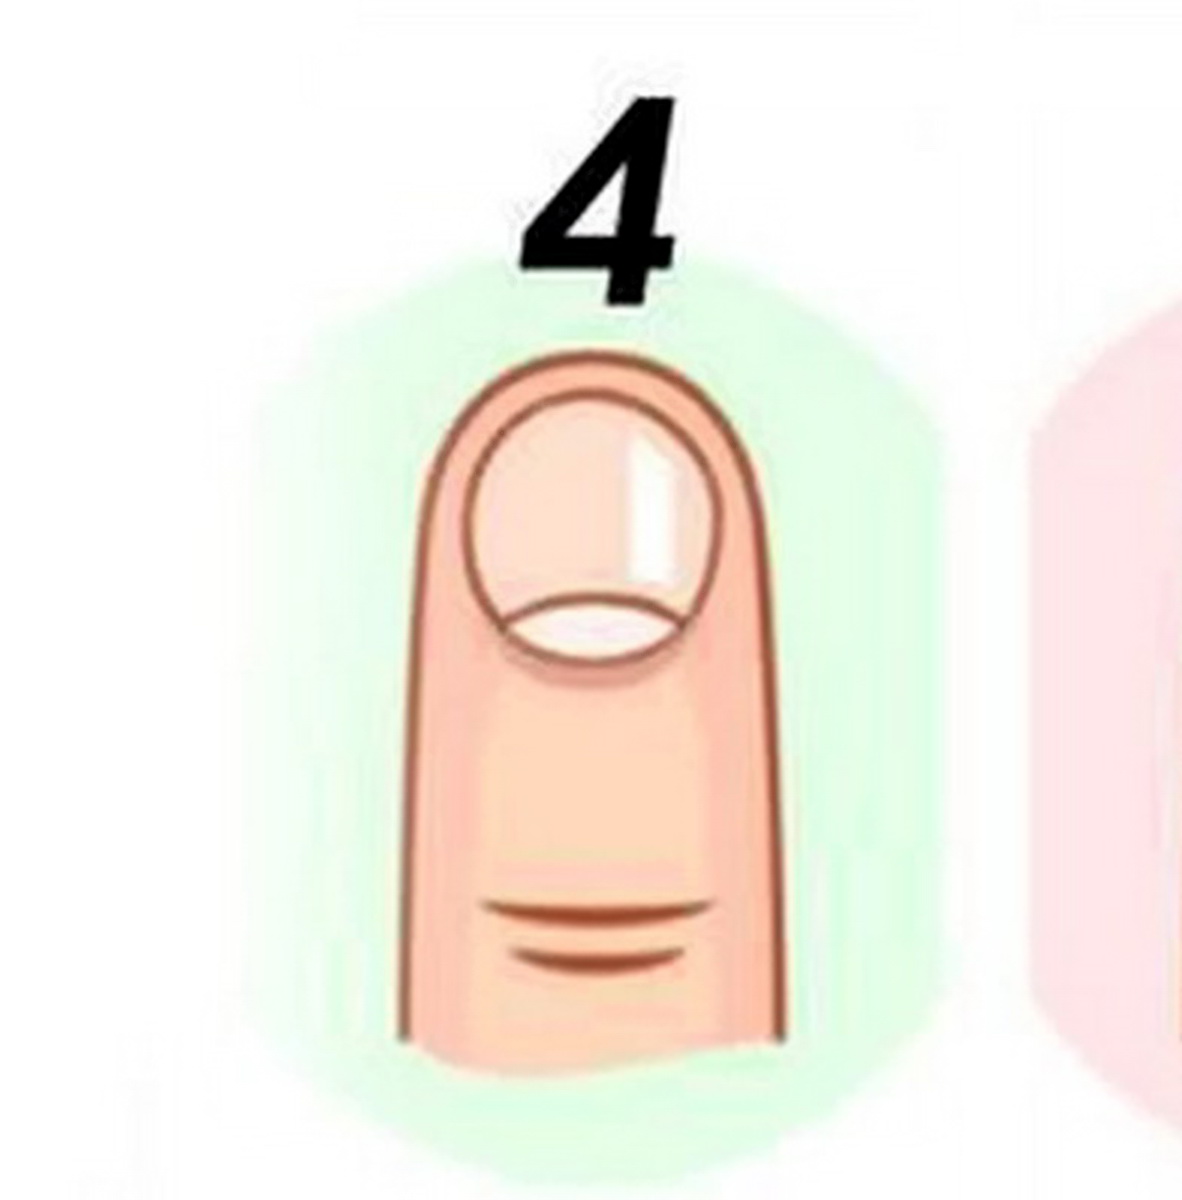 شکل ناخن شماره 4 در تست شخصیت شناسی براساس شکل ناخن